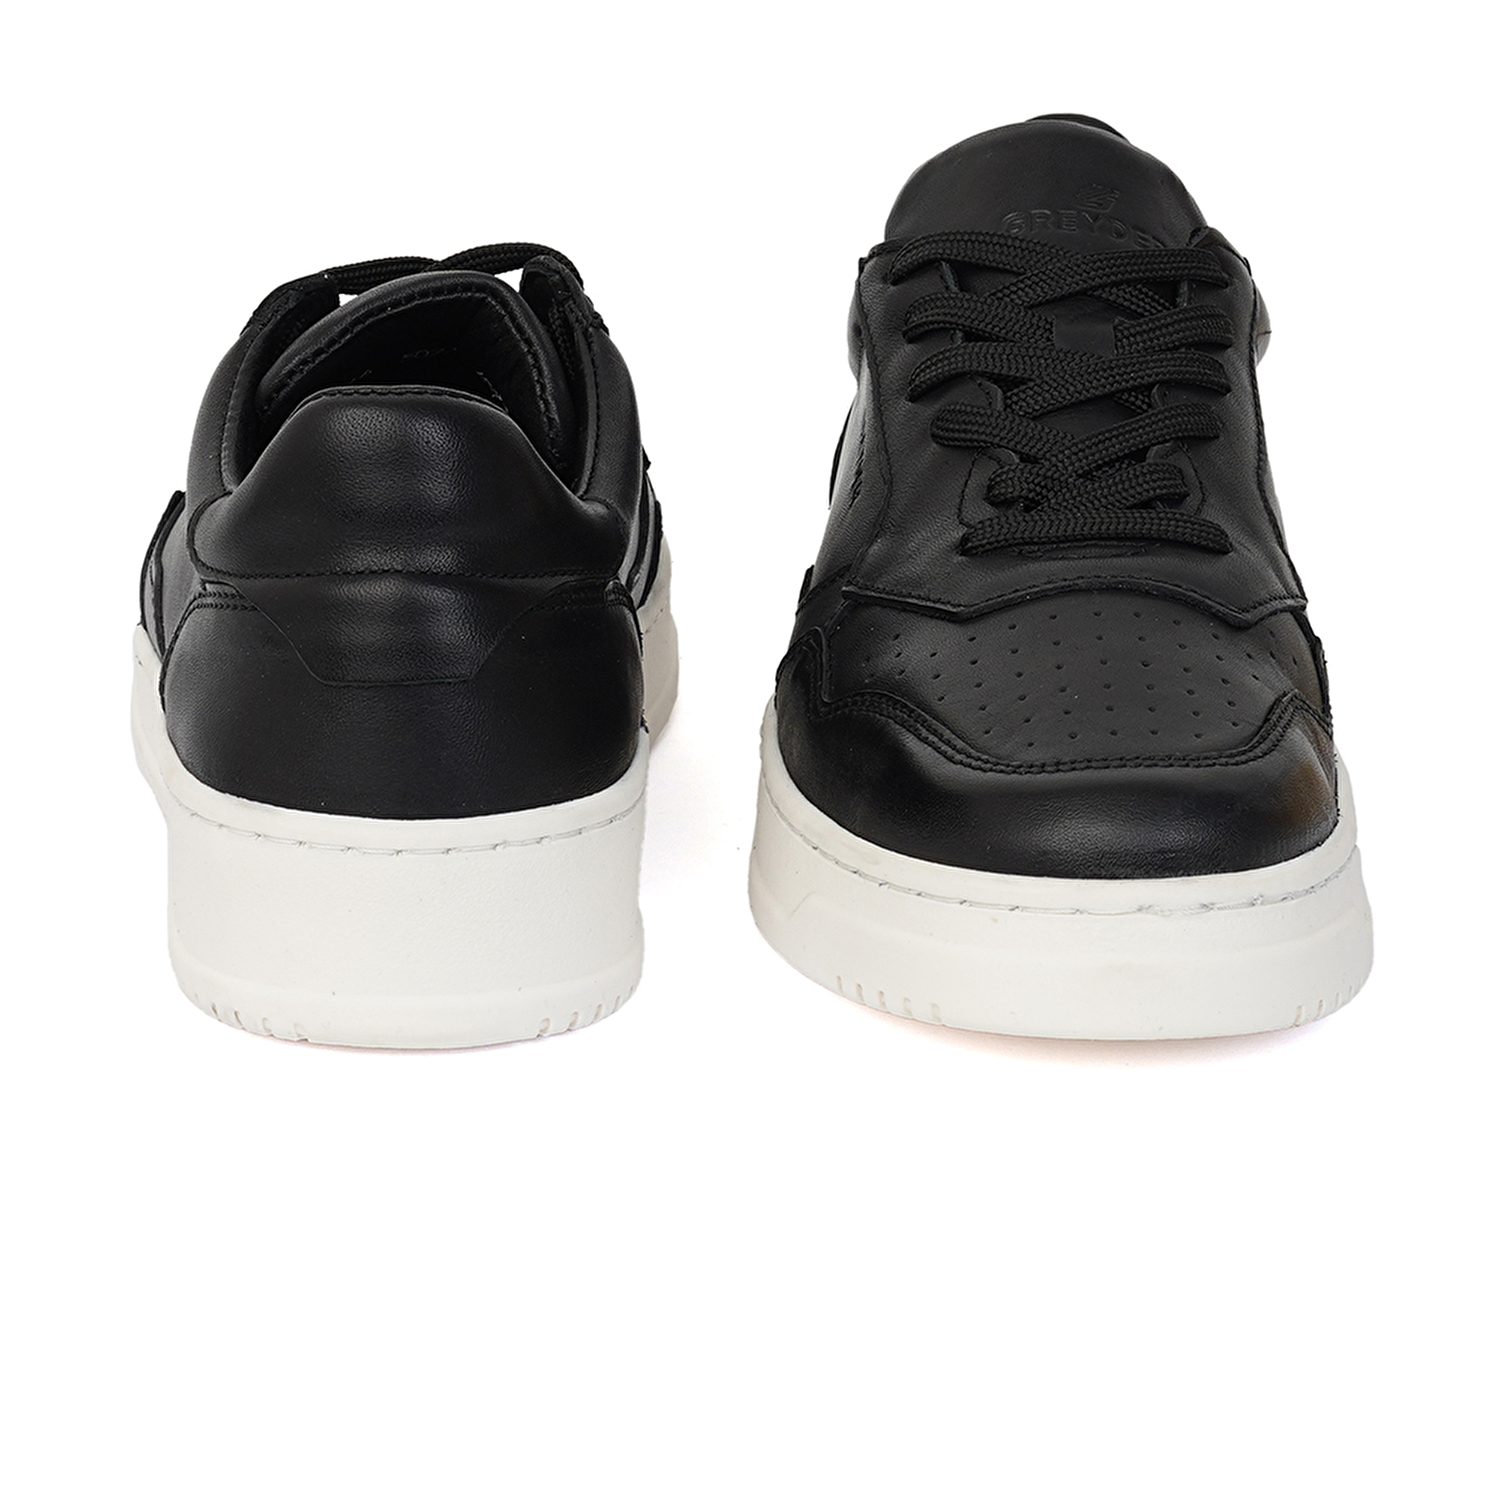 Kadın Siyah Hakiki Deri Sneaker Ayakkabı 3Y2SA50742-7